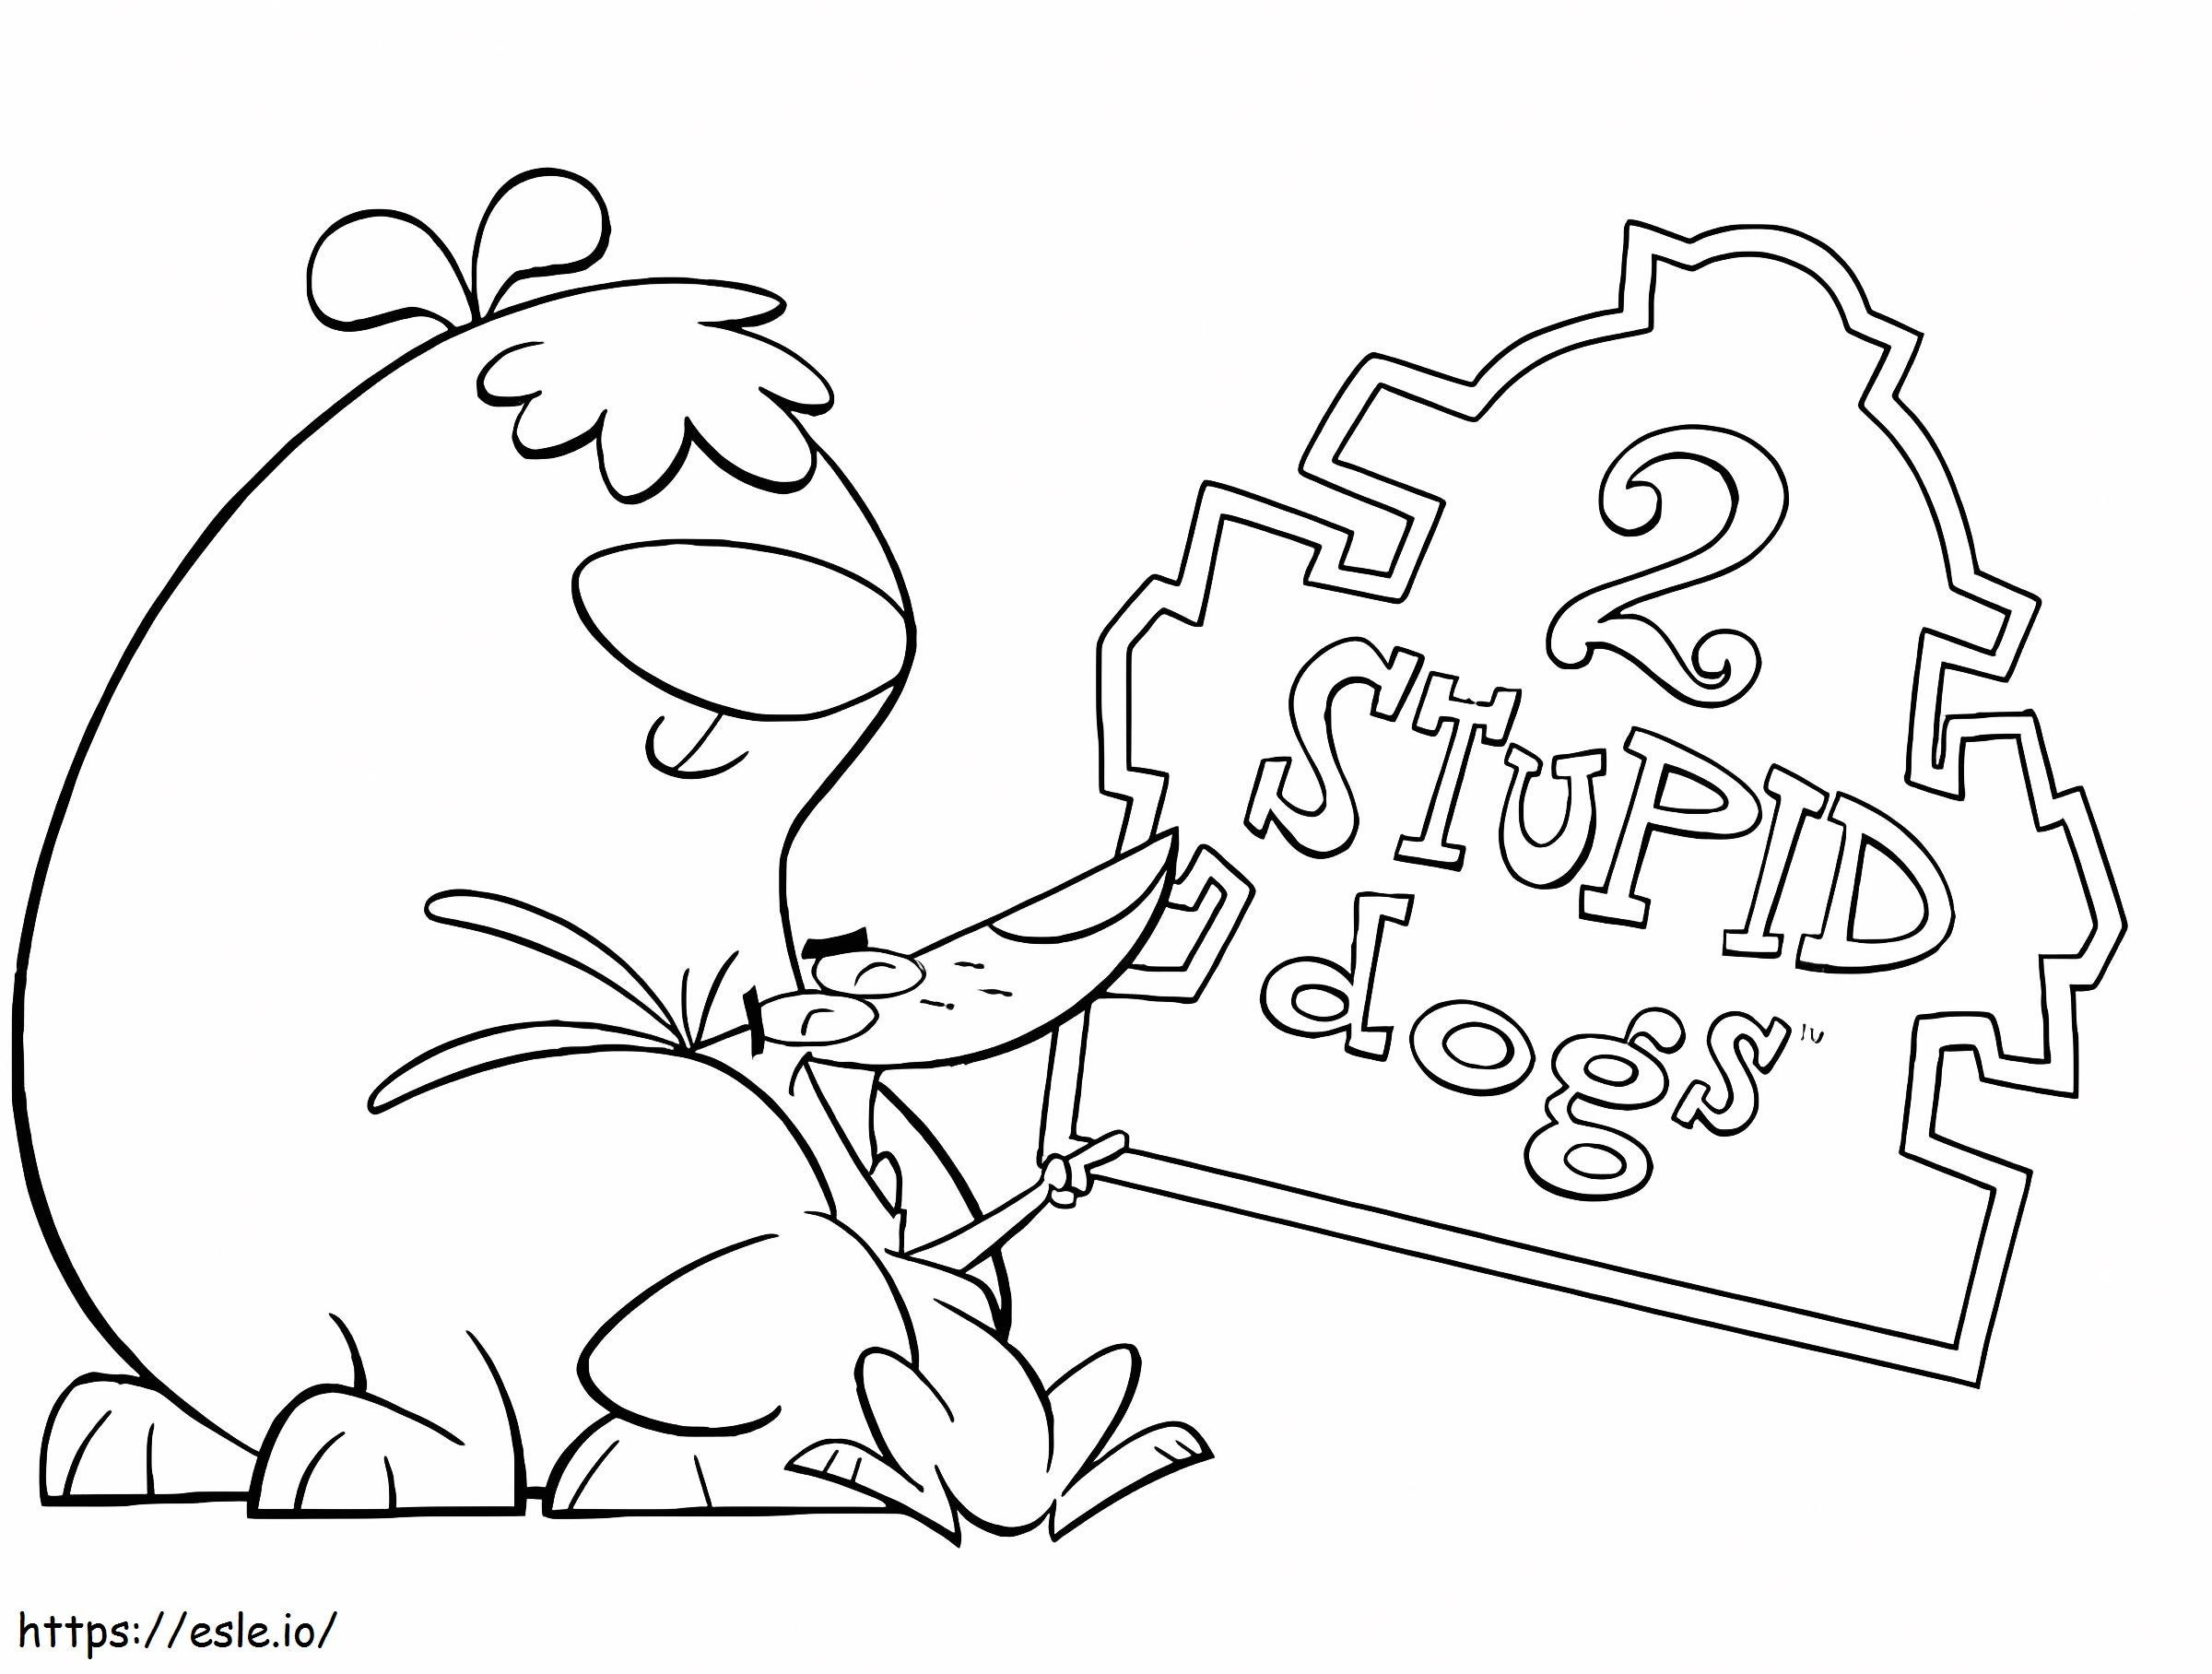  dibujos animados de perros estúpidos para colorear